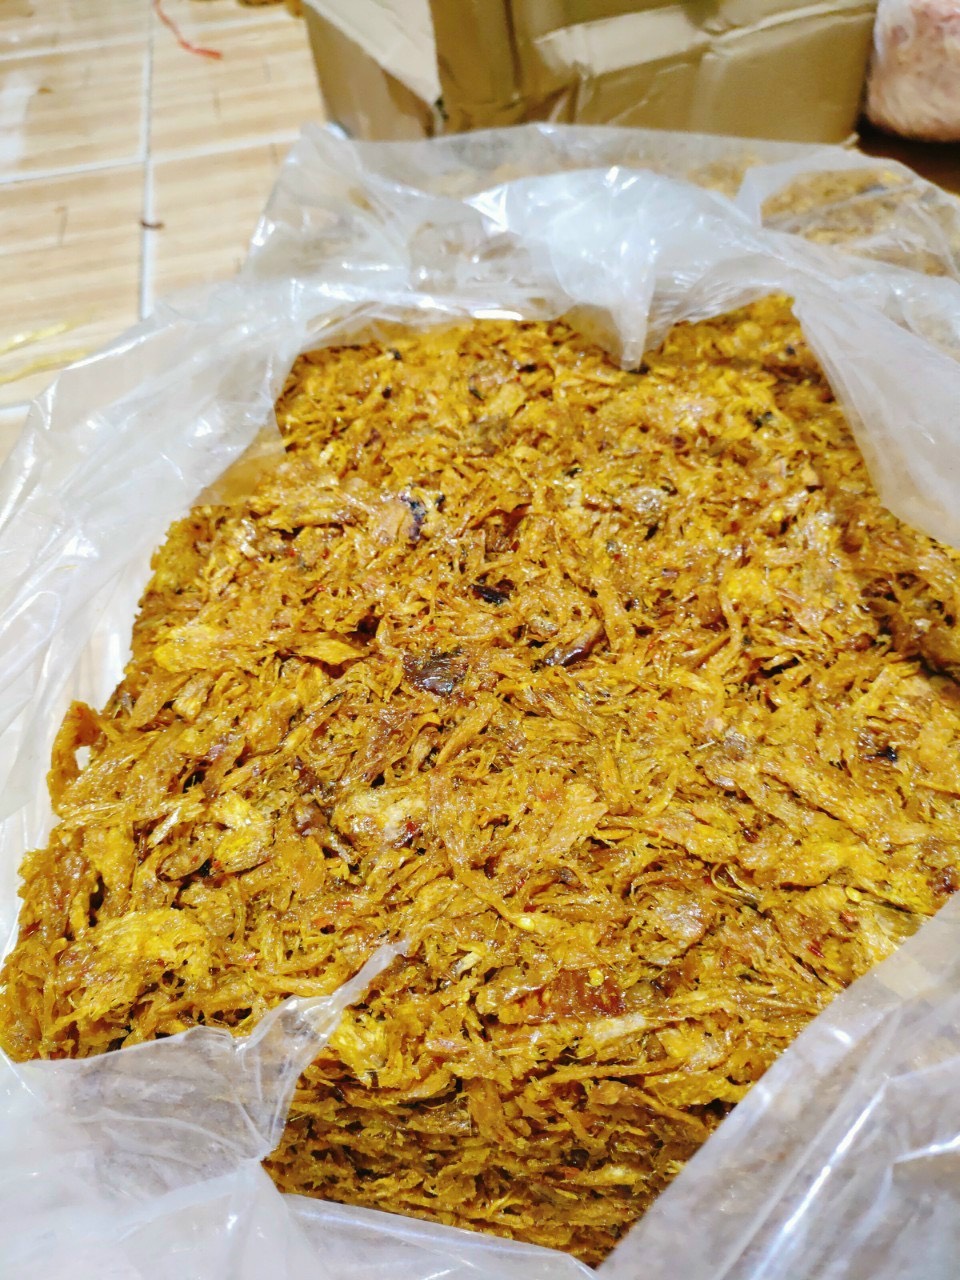 Mực khô xé sợi hộp 250 gram đã chế biến ăn liền ngon ơi là ngon của shop Đặc Sản Biển Phan Thiết NGỌC DŨNG. Hạn sử dụng 12 tháng kể từ ngày đặt hàng